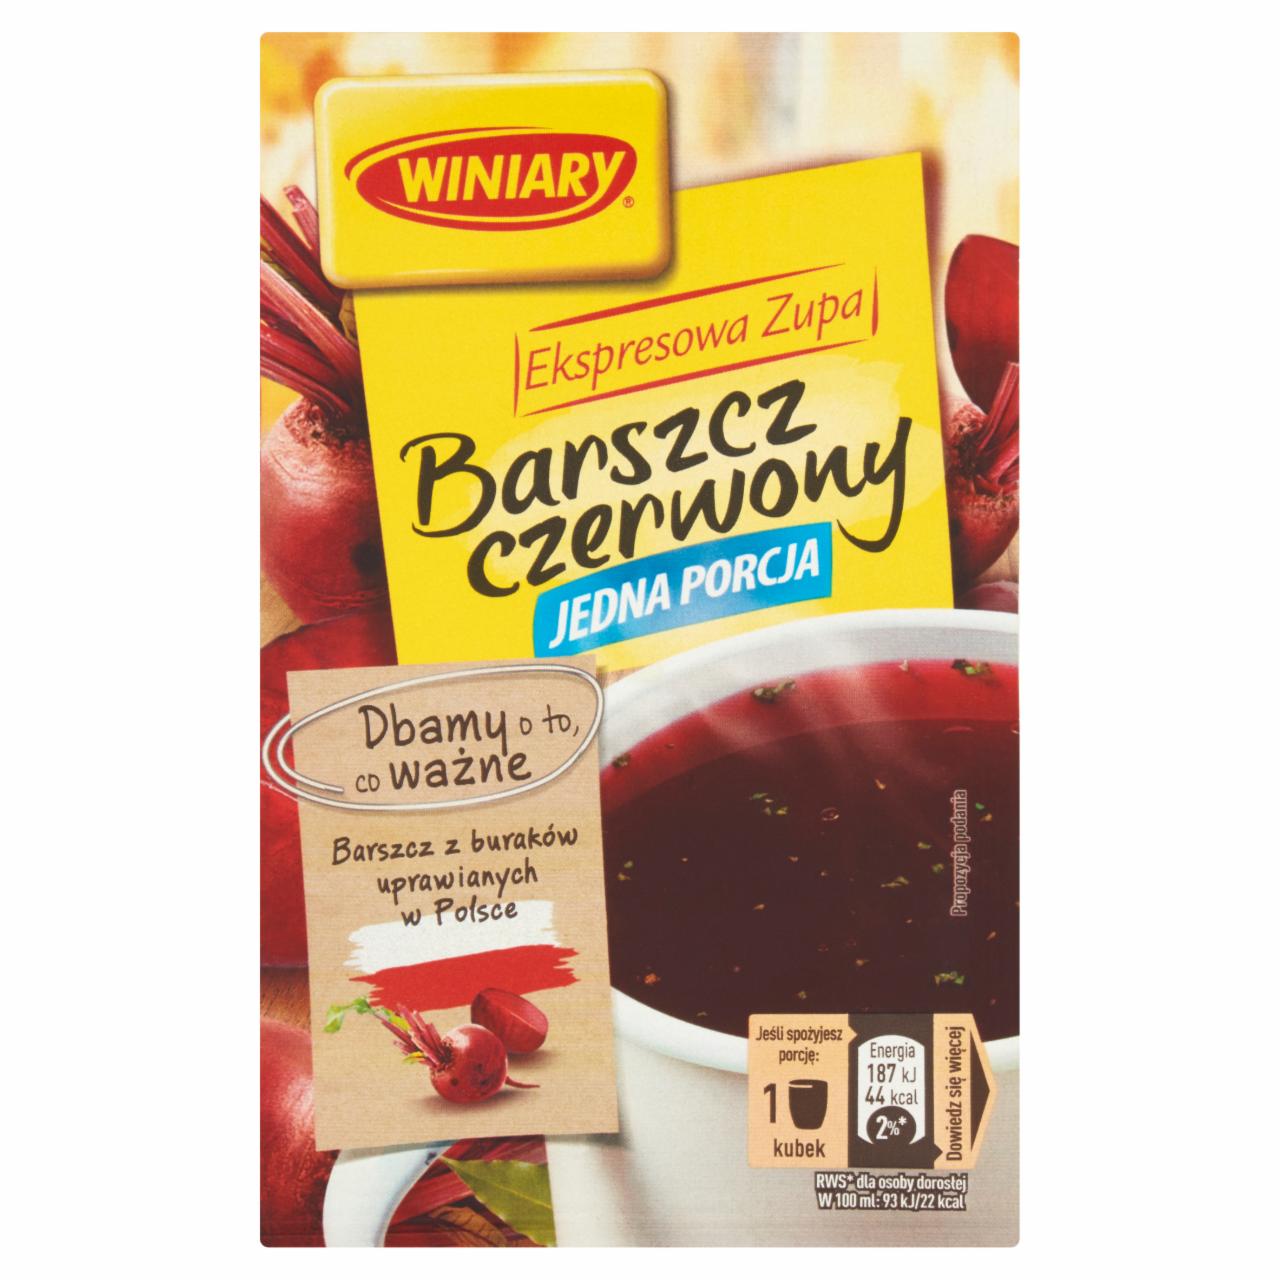 Zdjęcia - Winiary ekspresowa zupa Barszcz czerwony 13 g